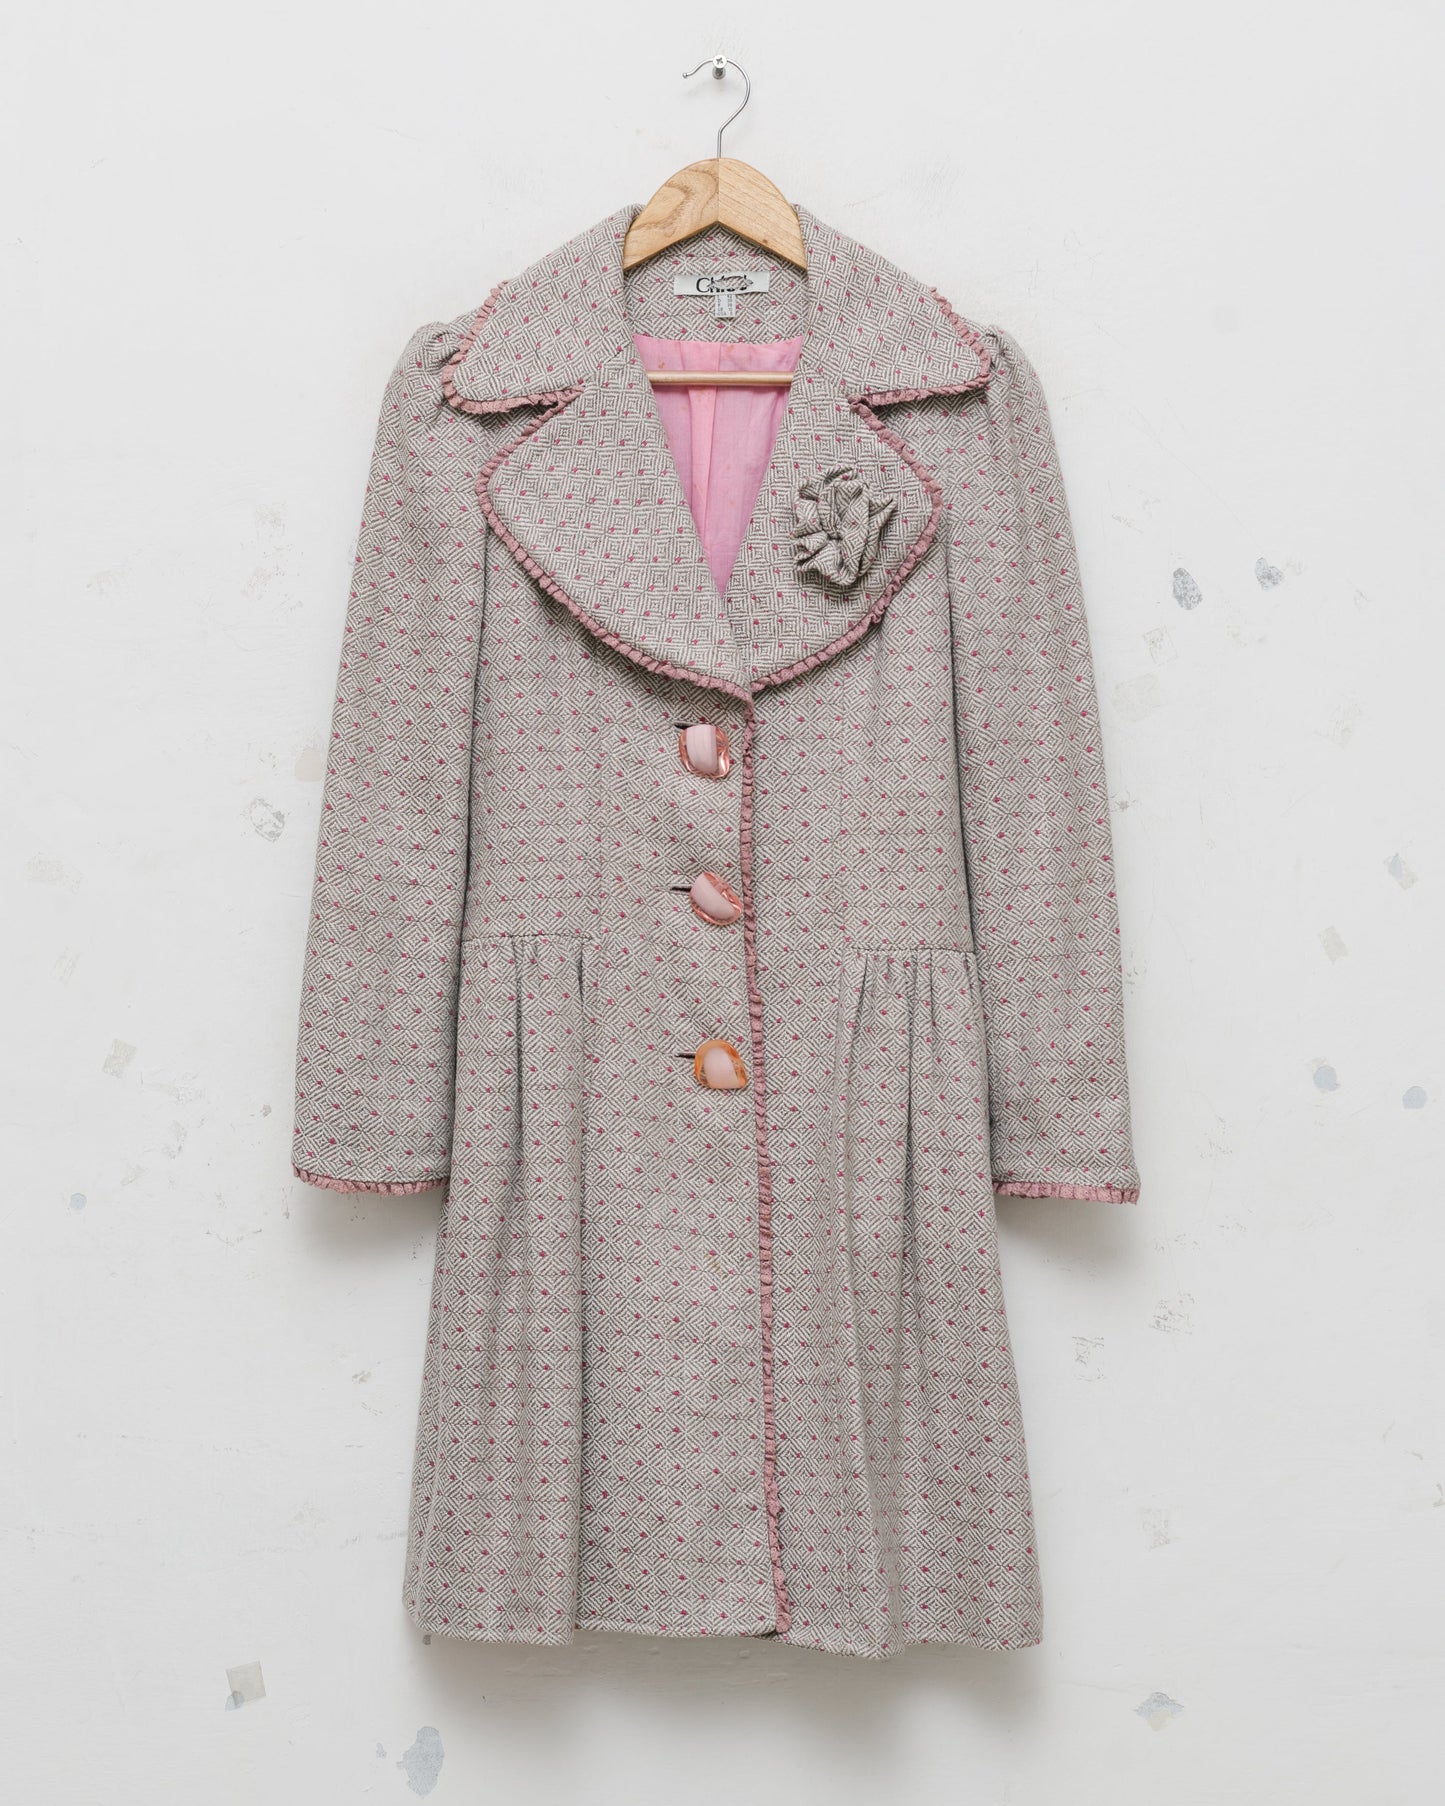 Chloé patterned dress coat